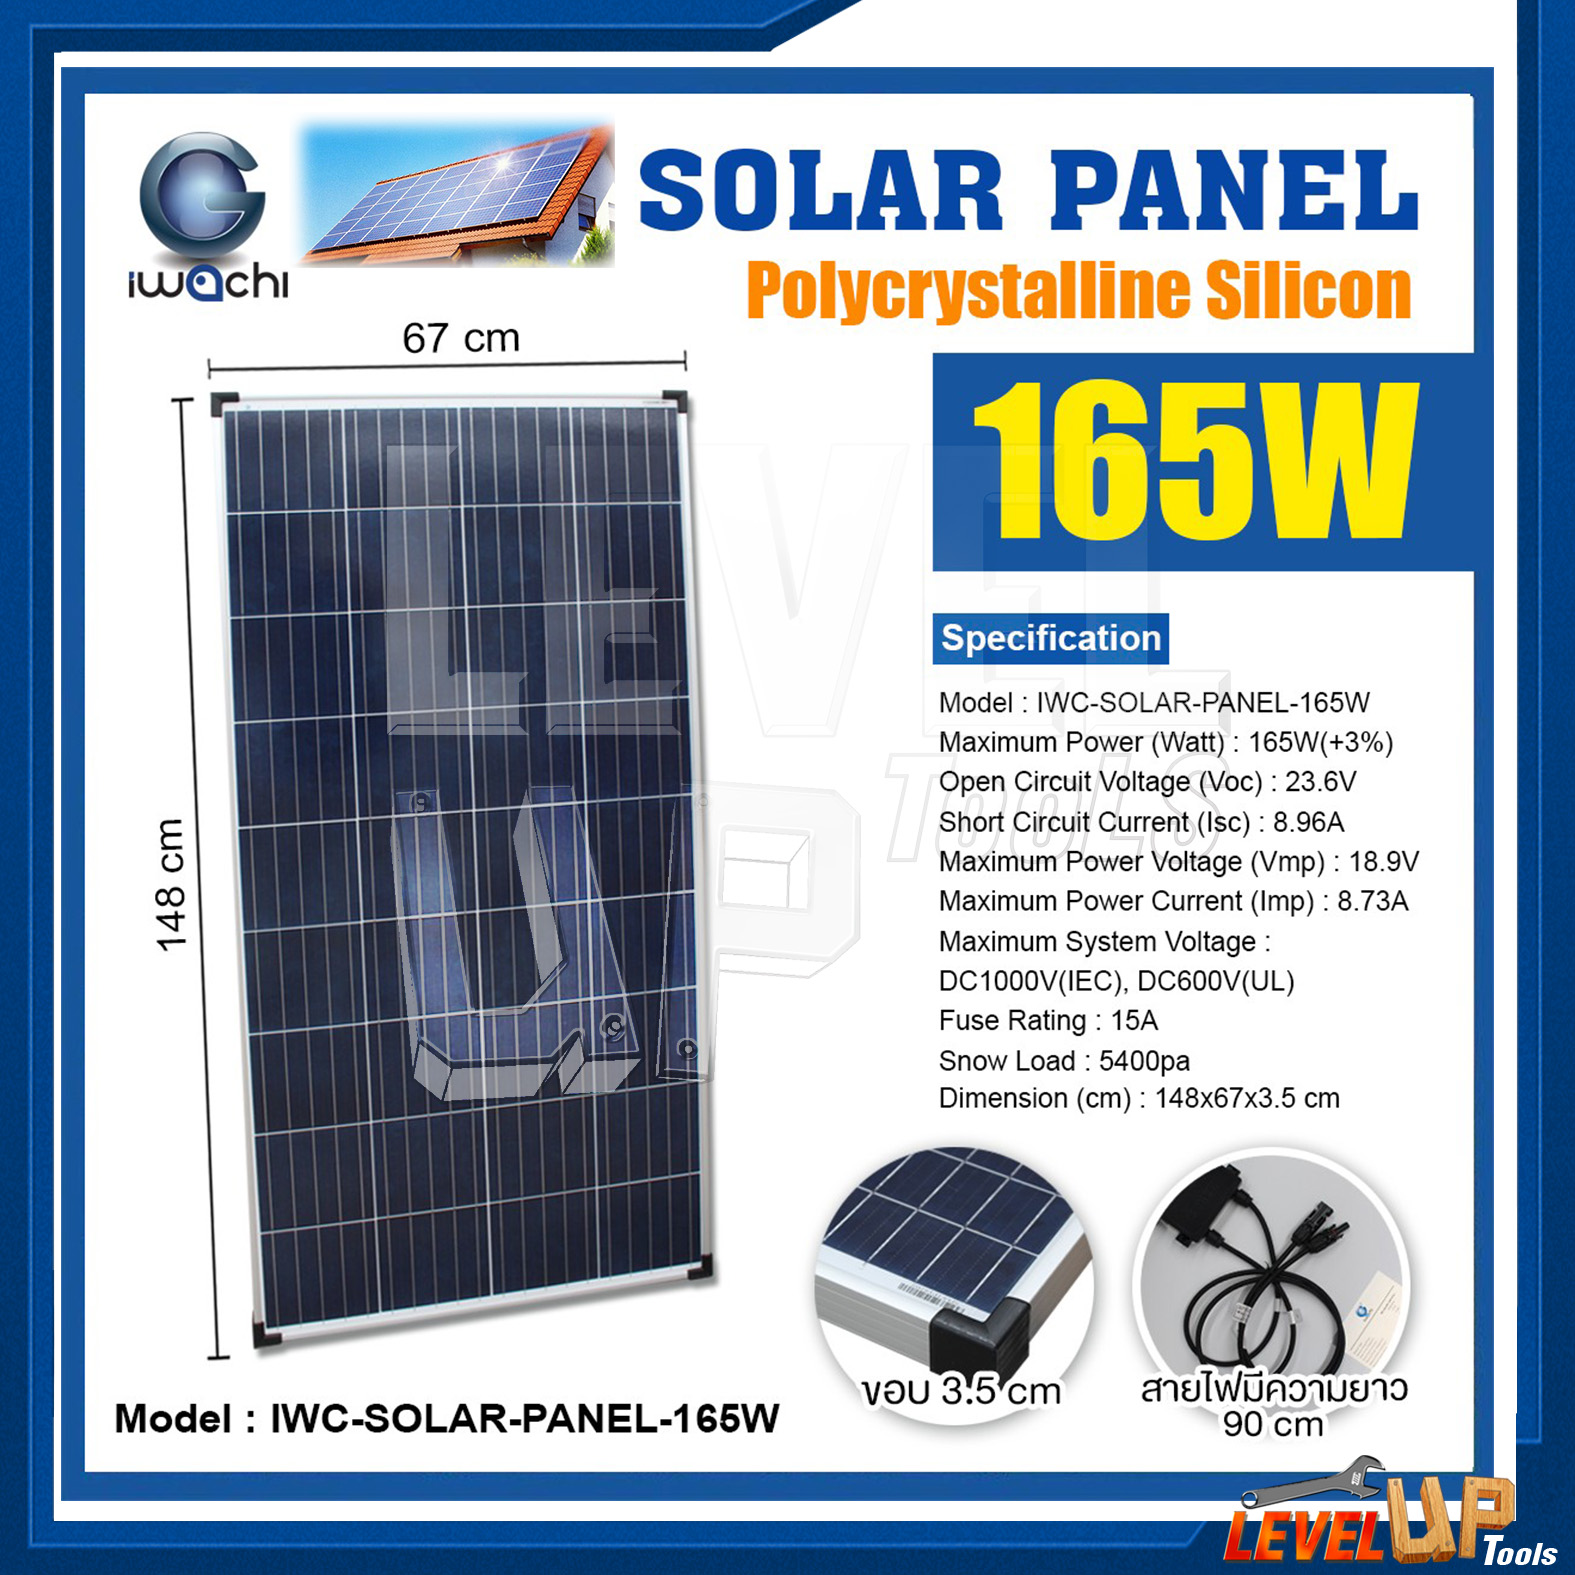 แผงโซล่าเซลล์ Solar Panel แผงโซล่า IWACHI แผงโซล่าเซลล์ IWC-SOLAR-PANEL-165W พลังงานแสงอาทิตย์ กำลังไฟ 165 วัตต์ รับประกัน 15 ปี